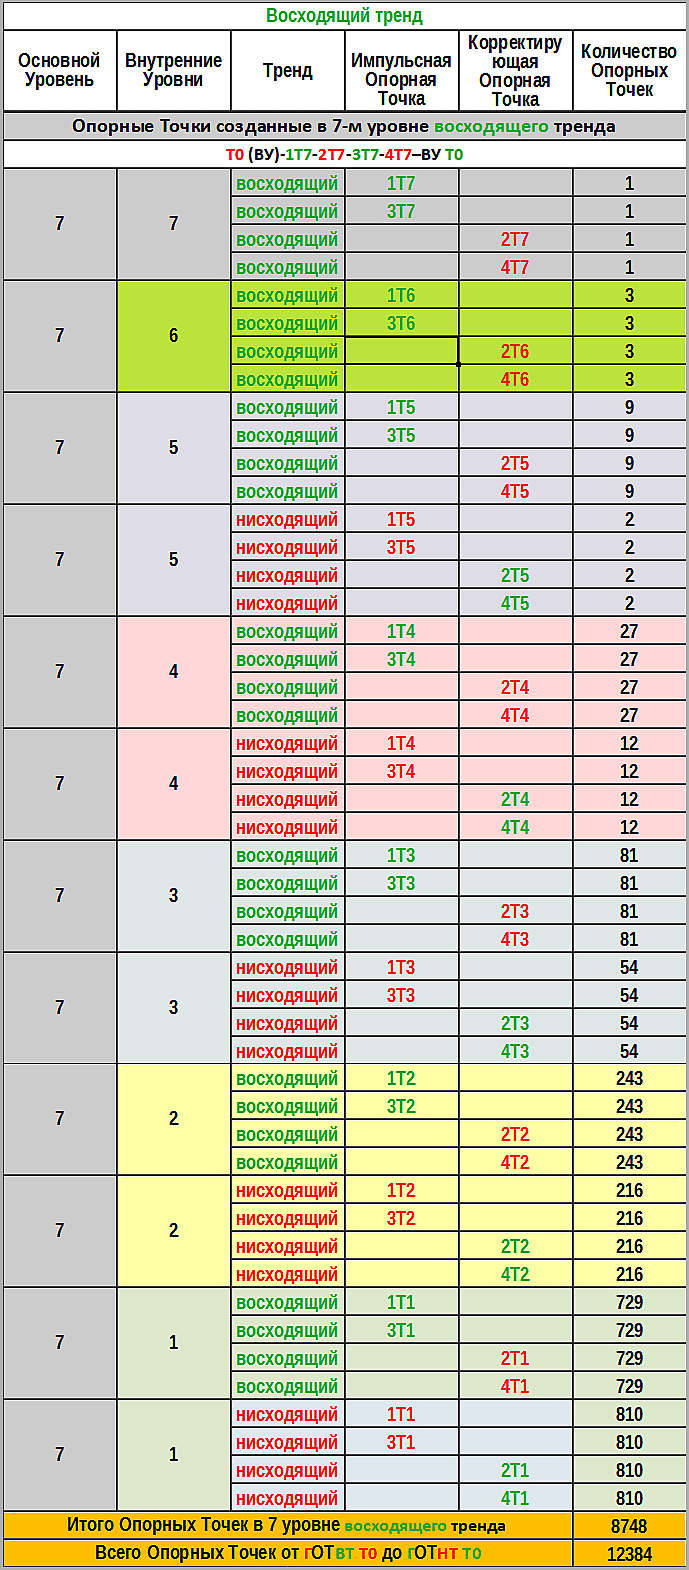 Таблица №8  Опорные Точки, созданные в 7-м уровне восходящего тренда